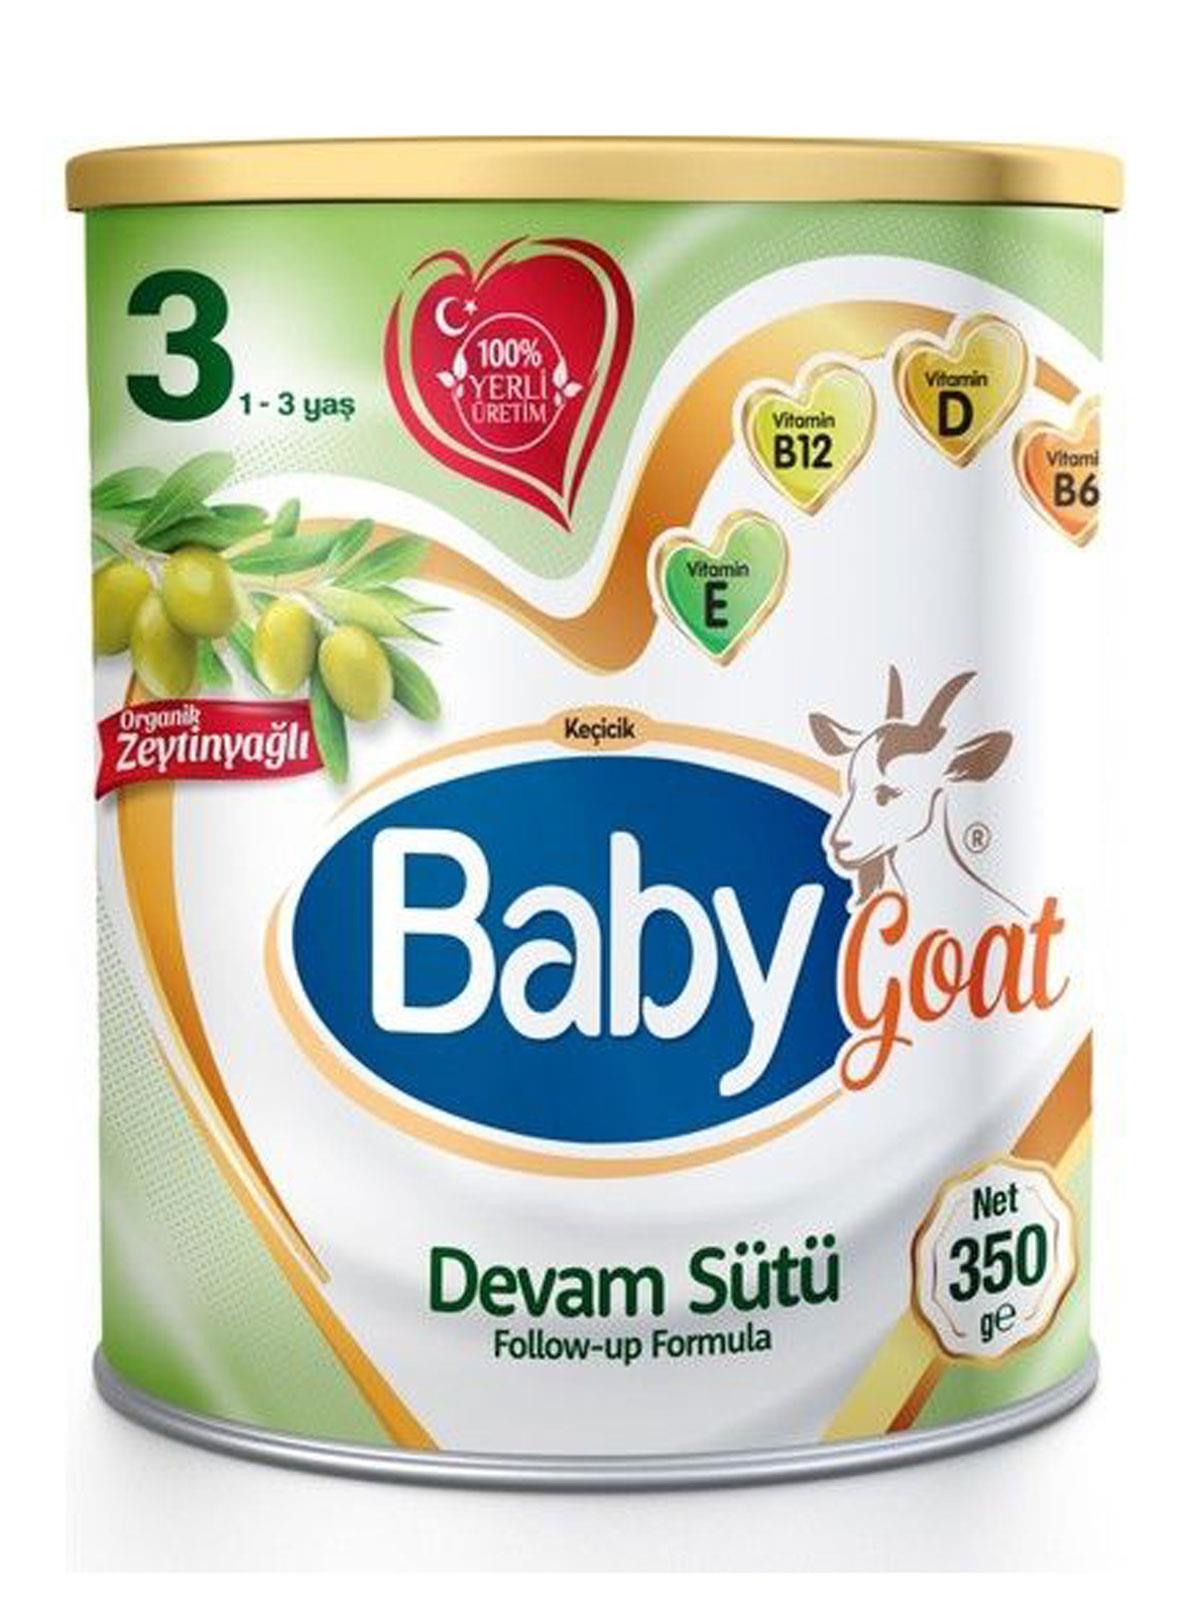 Baby Goat 3 Keçi Sütü Bazlı Organik Zeytinyağlı Bebek Sütü 350 gr